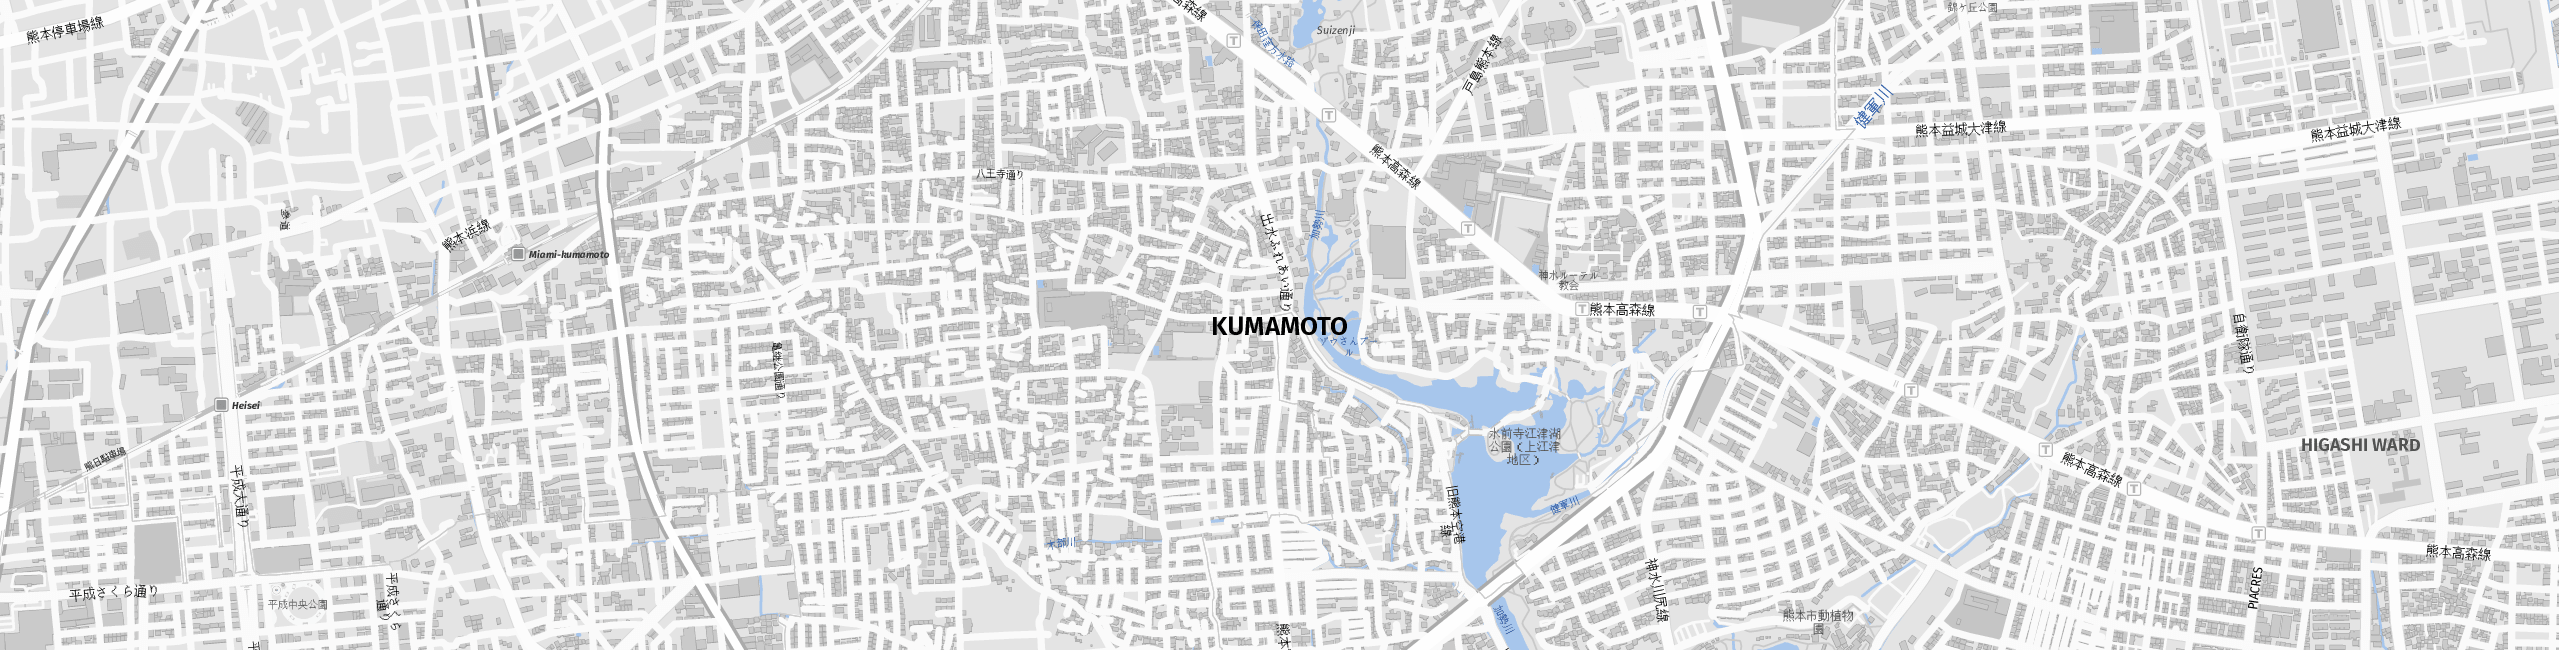 Stadtplan Kumamoto zum Downloaden.